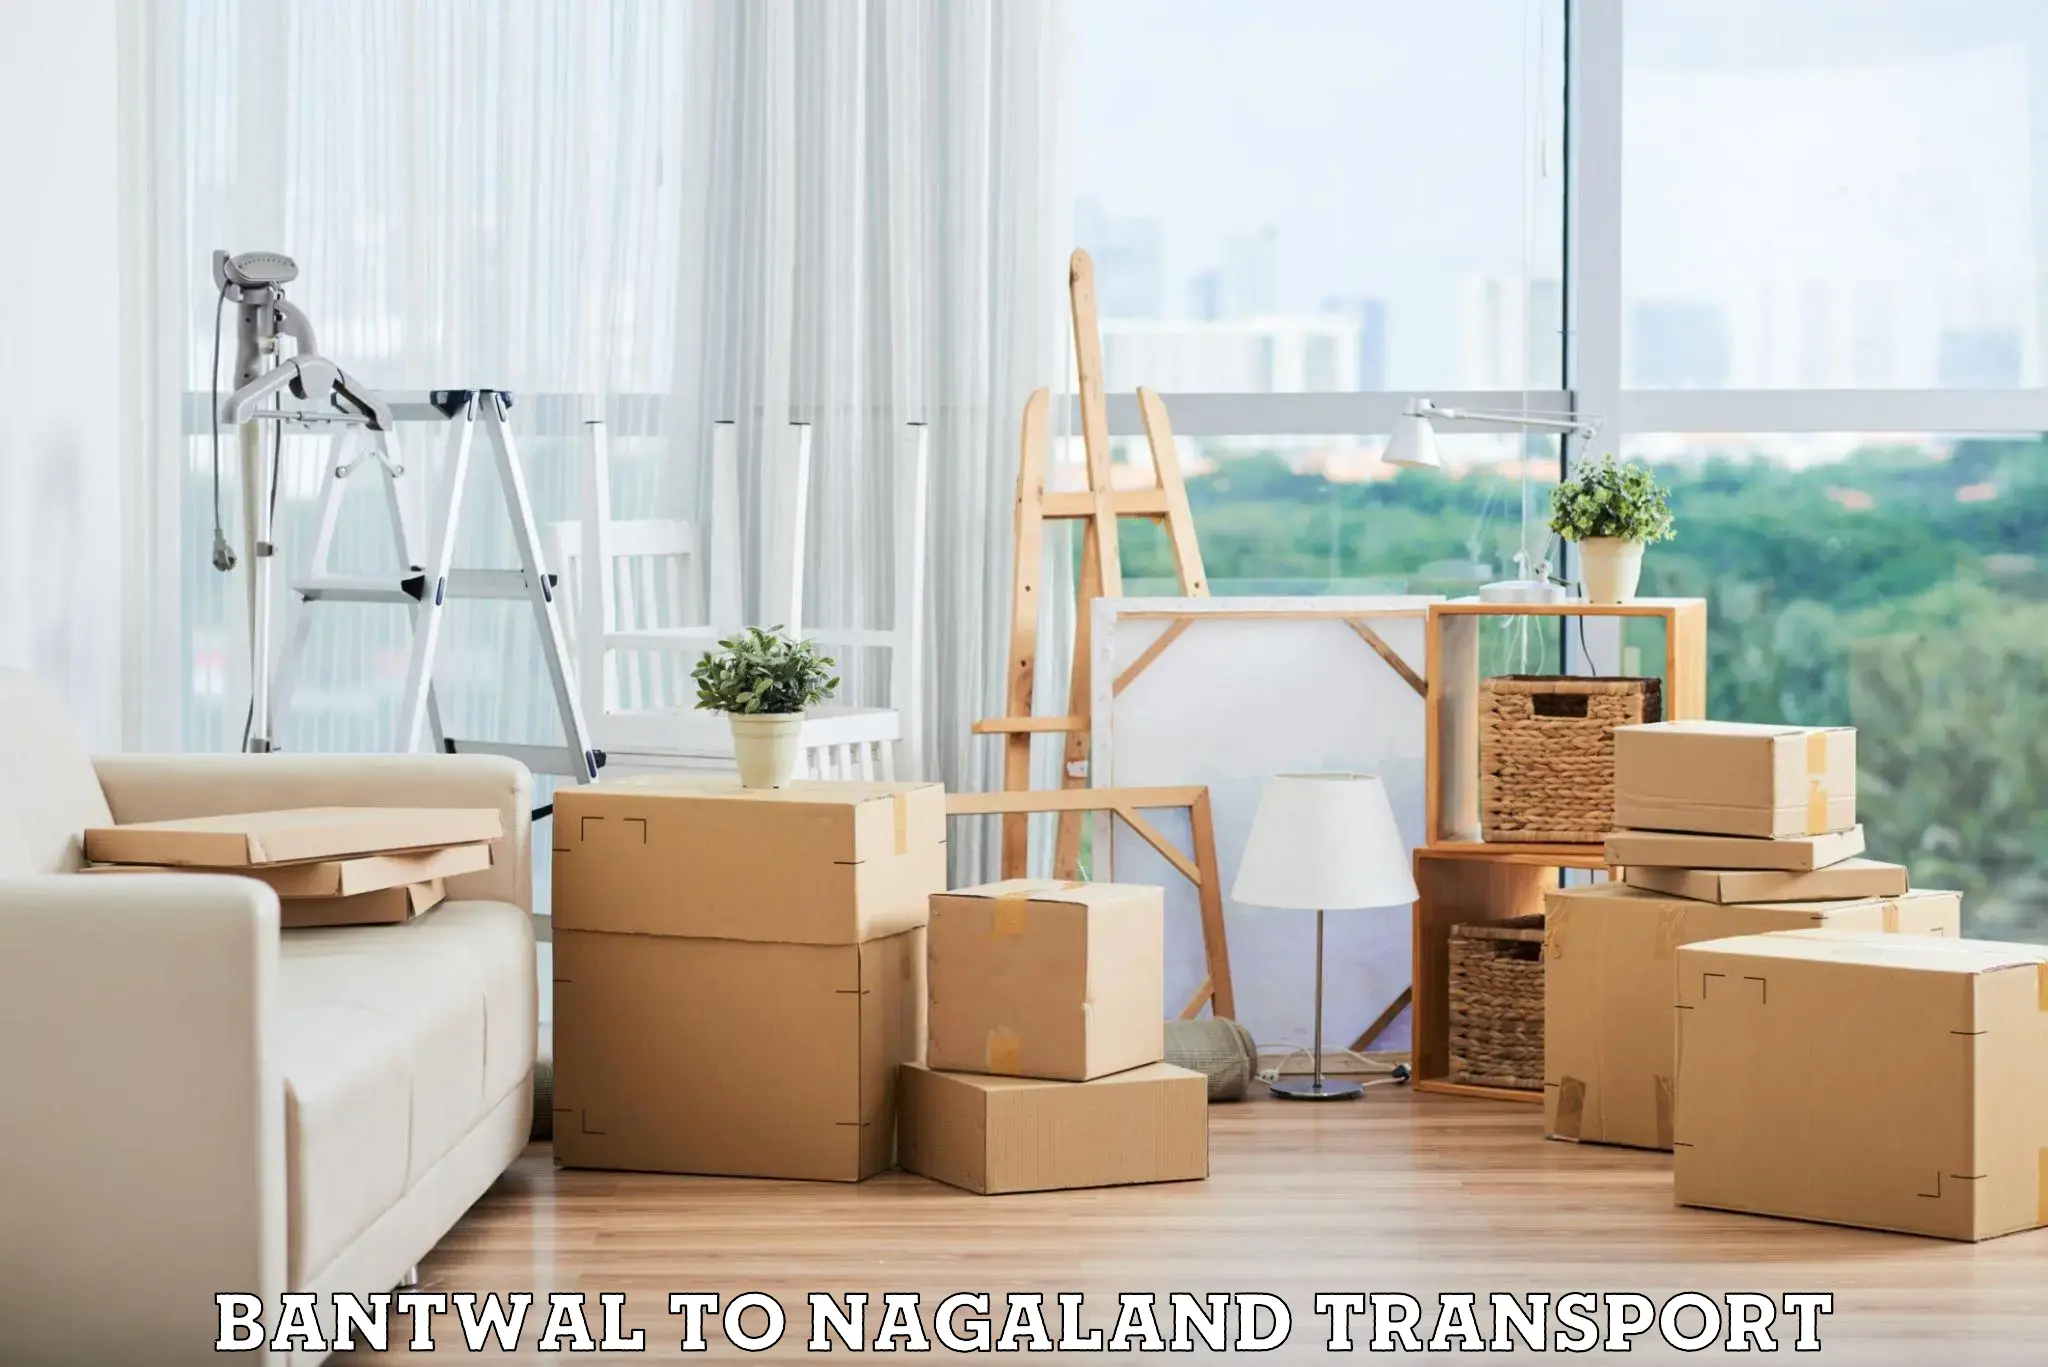 Shipping partner Bantwal to Nagaland